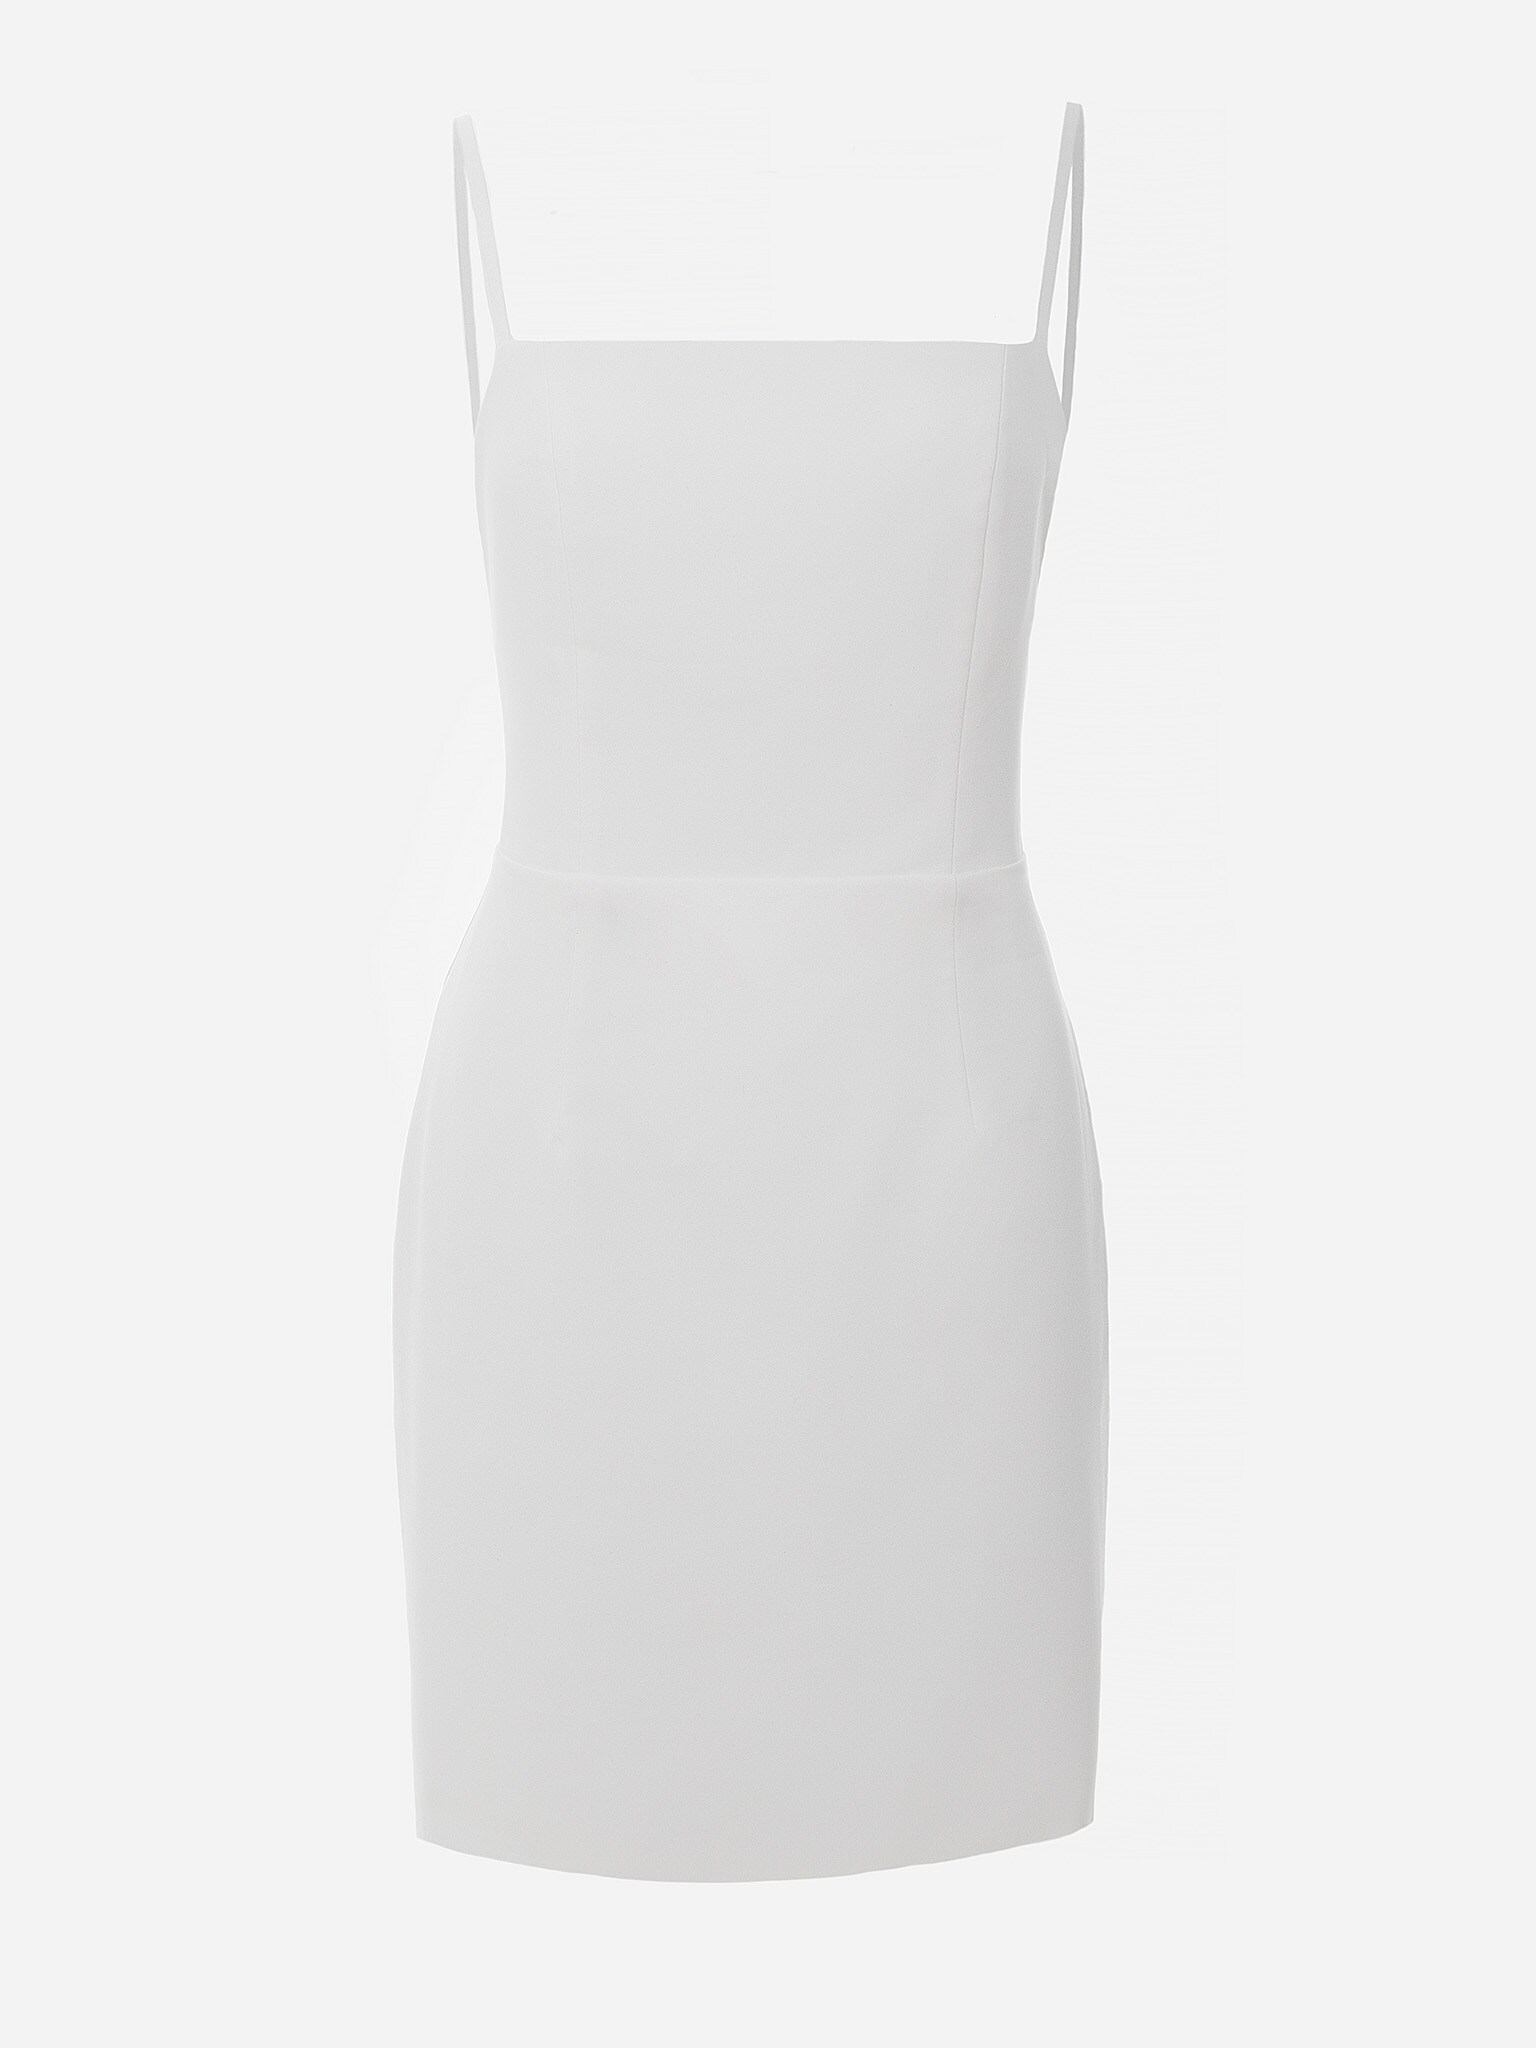 Skinny strap mini dress :: LICHI - Online fashion store